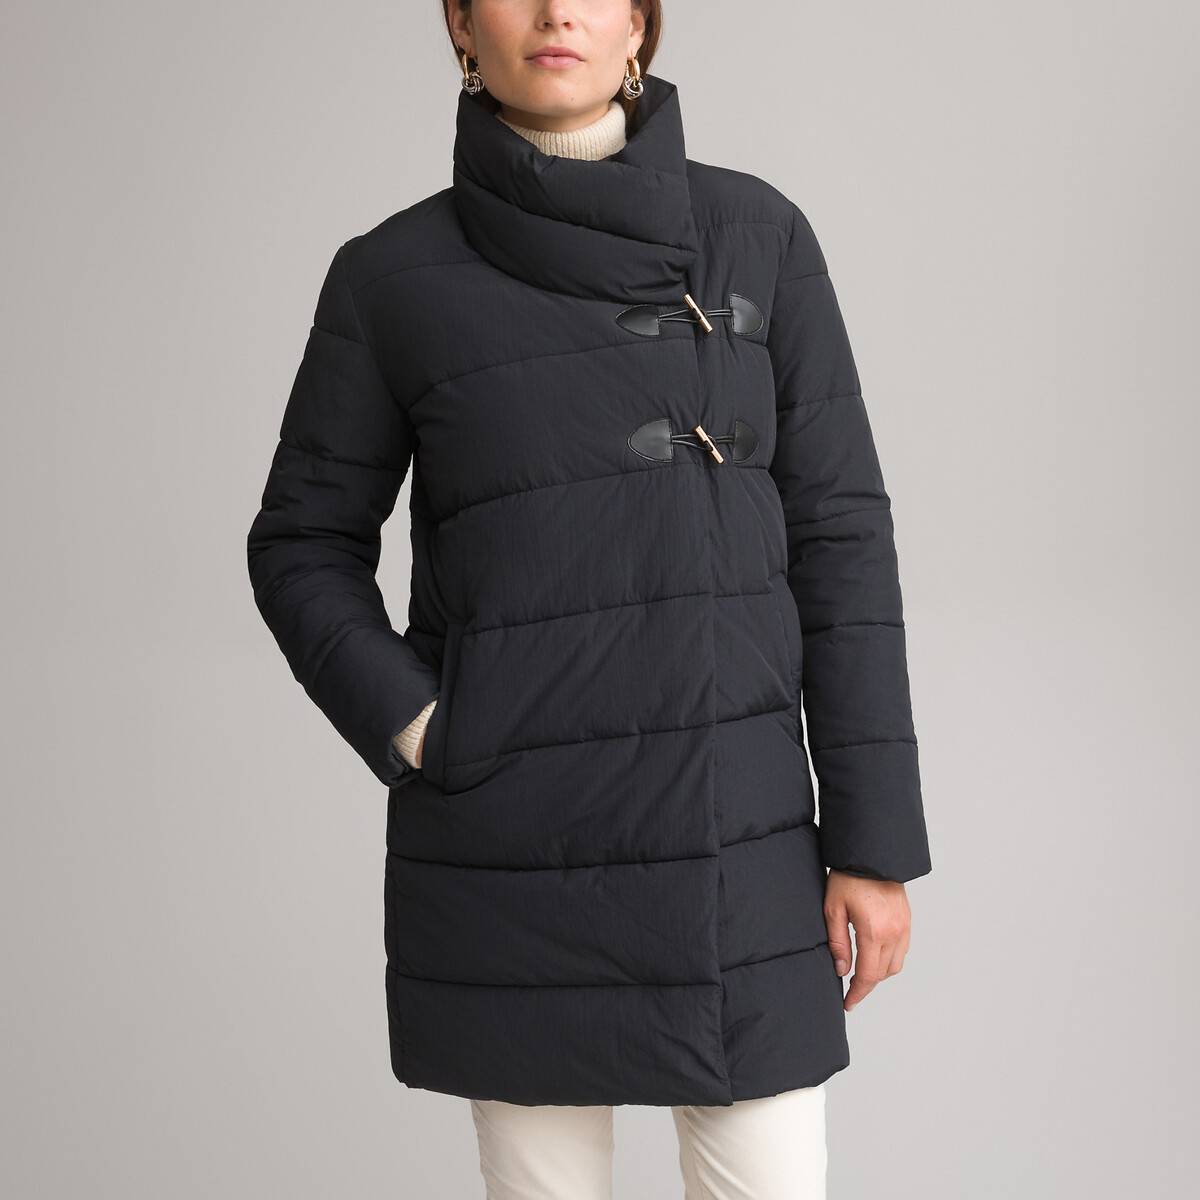 Куртка стеганая средней длины застежка на молнию зимняя модель 36 (FR) - 42 (RUS) черный куртка стеганая средней длины на кнопках m синий